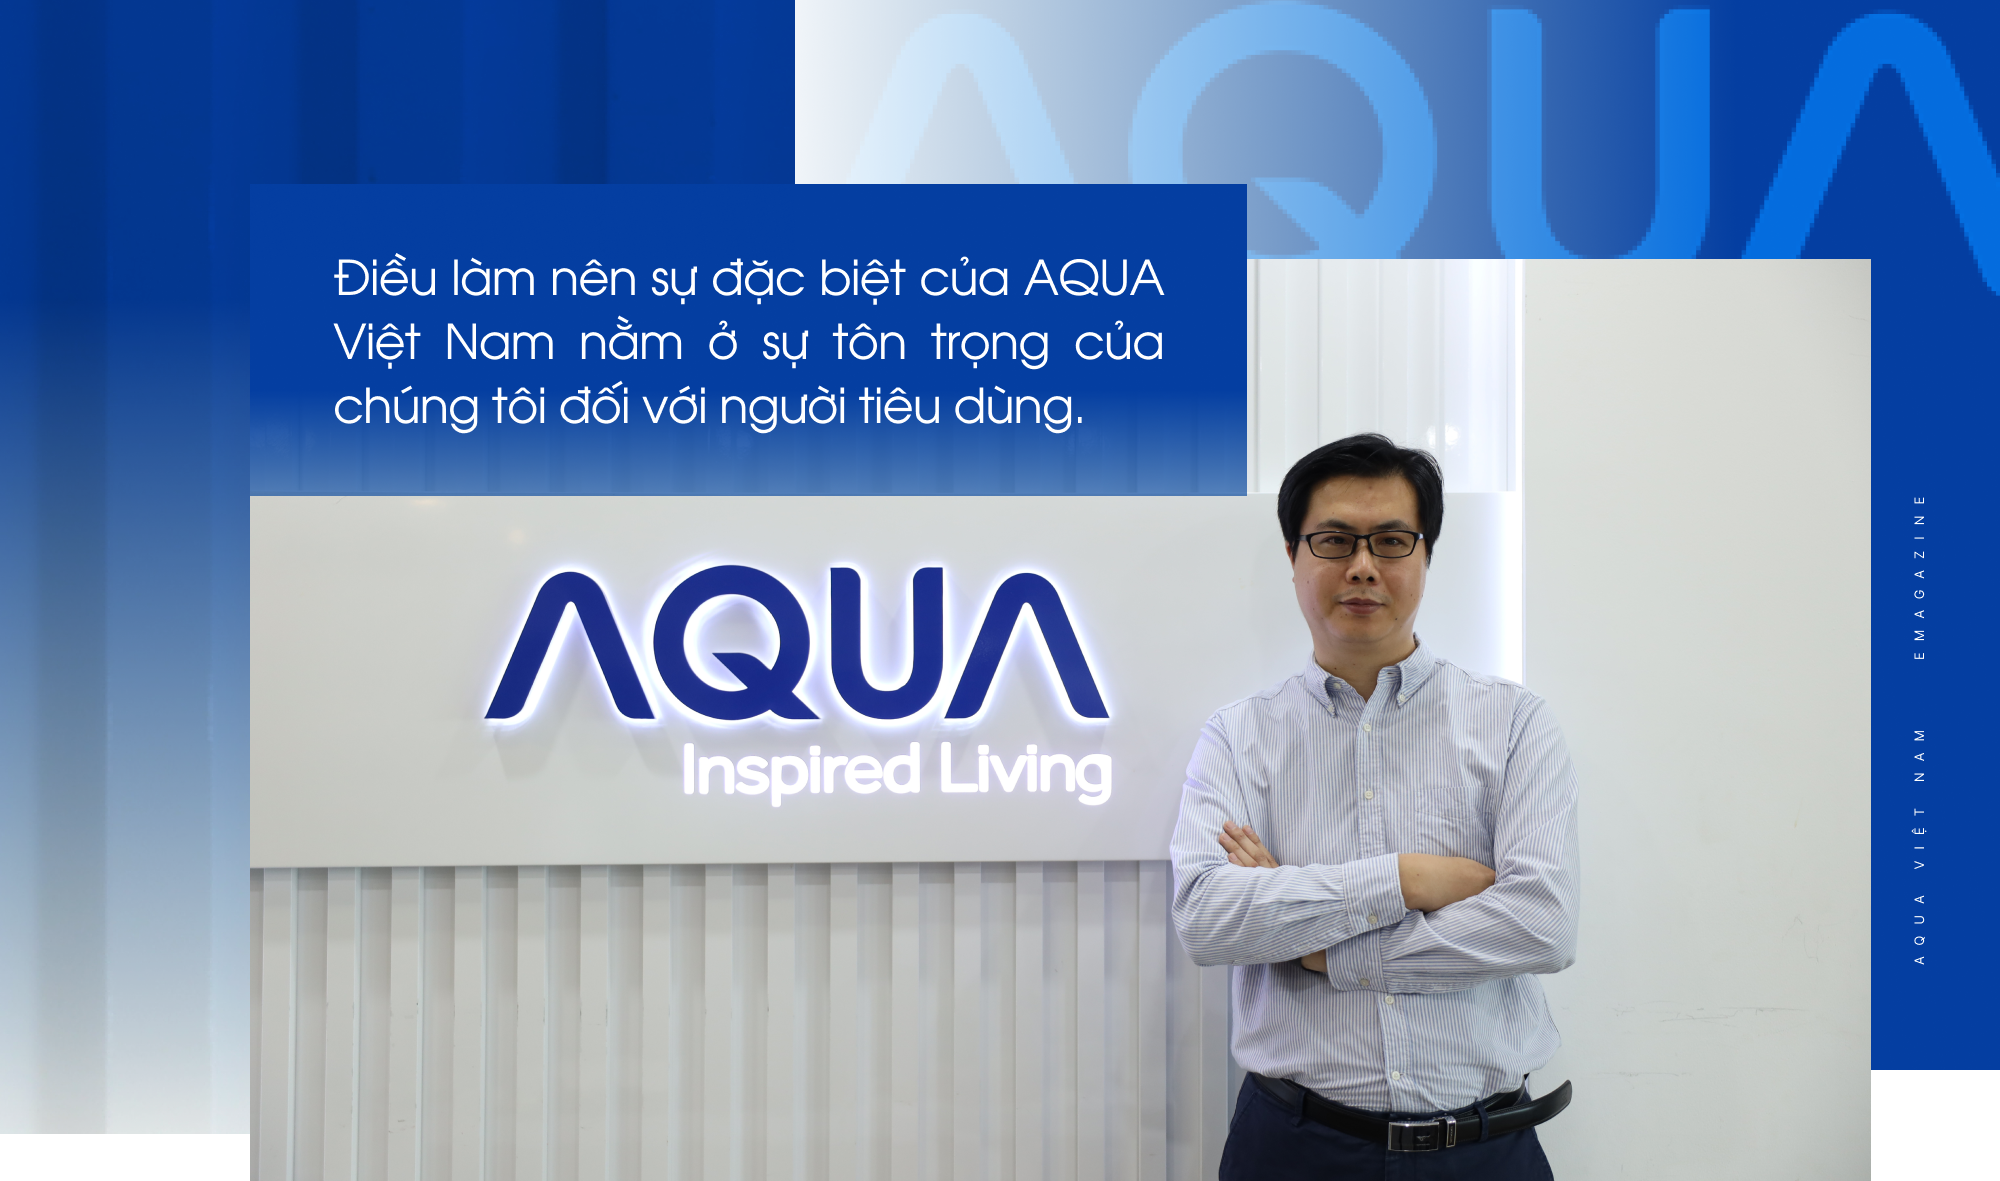 AQUA Việt Nam - Hành trình 26 năm cải tiến công nghệ khơi nguồn cảm hứng sống - Ảnh 6.